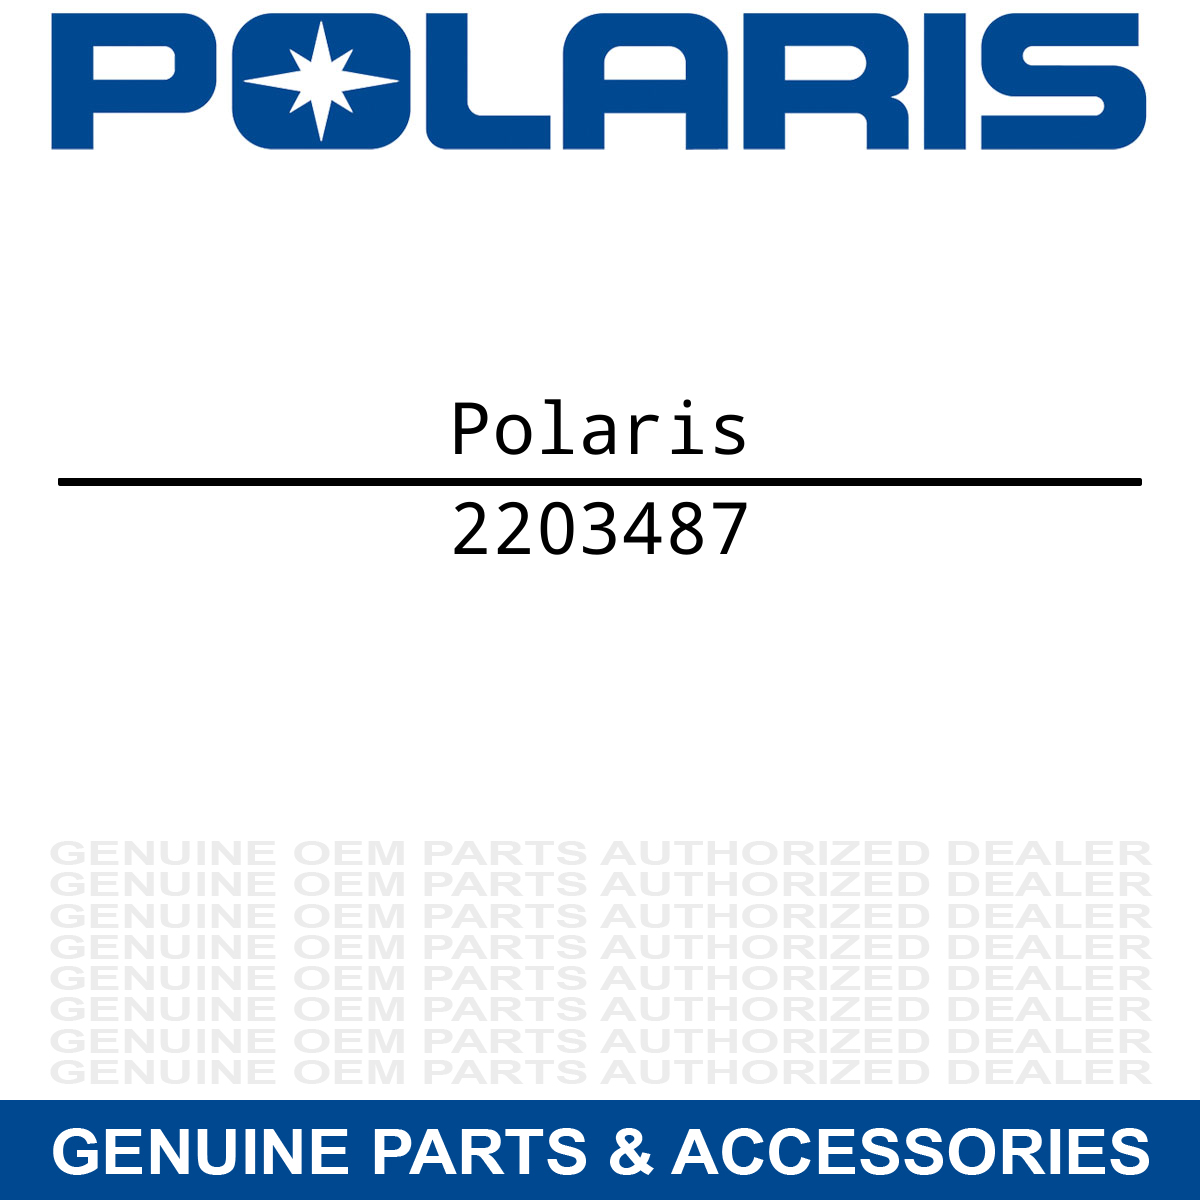 Polaris 2203487 Full Assembly Kit Turbo Trail Switchback Super 340 550 Cruiser Deluxe FS